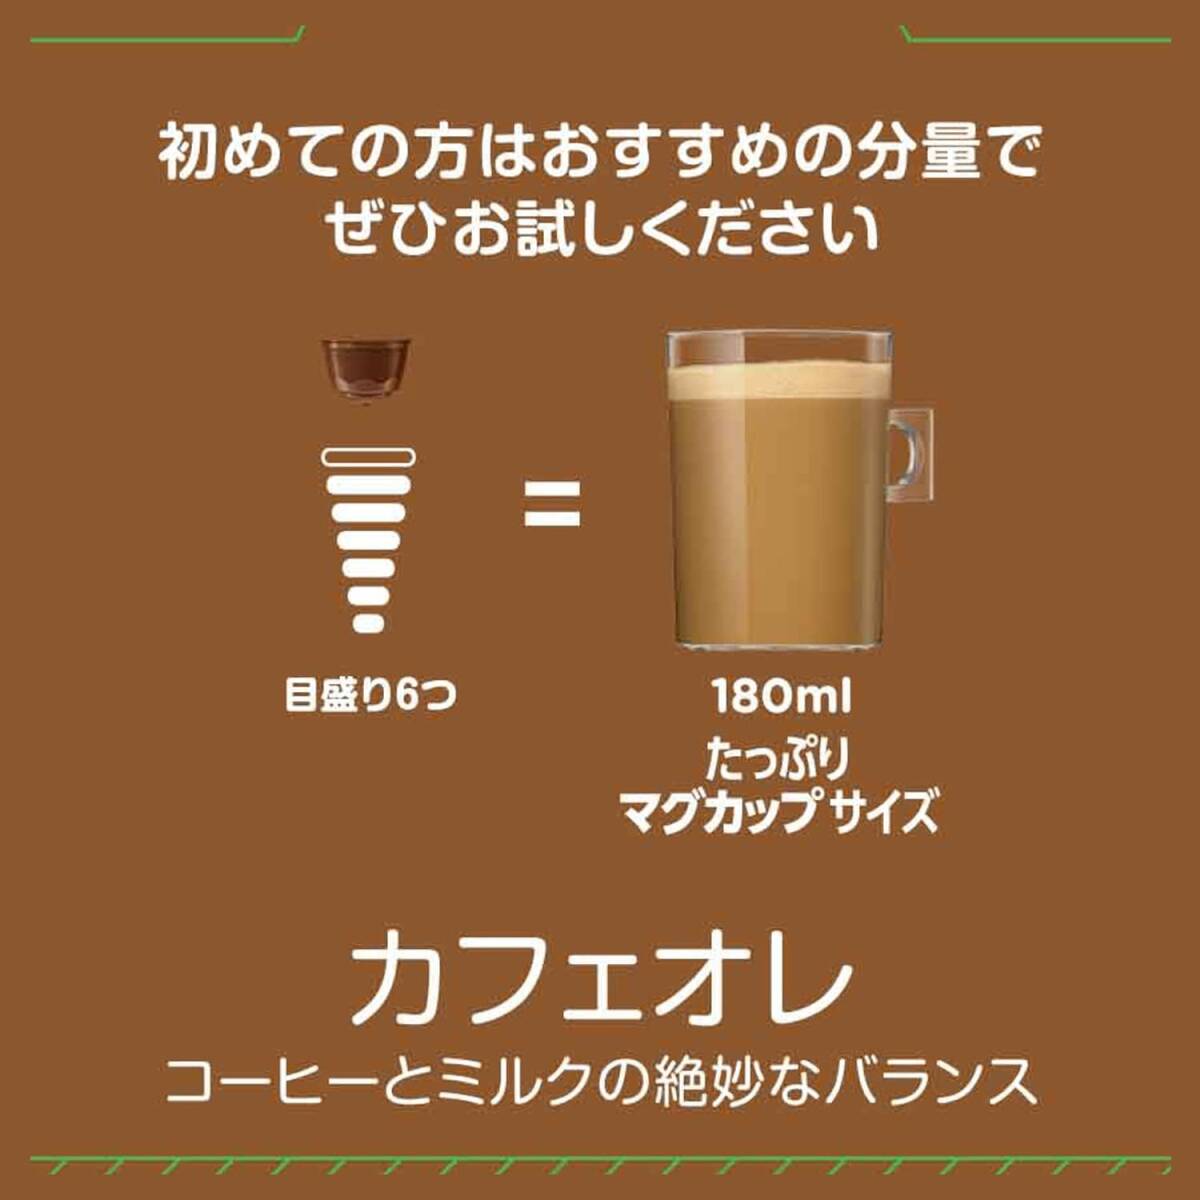 nes Cafe Dolce Gusto специальный Capsule кофе с молоком 30P